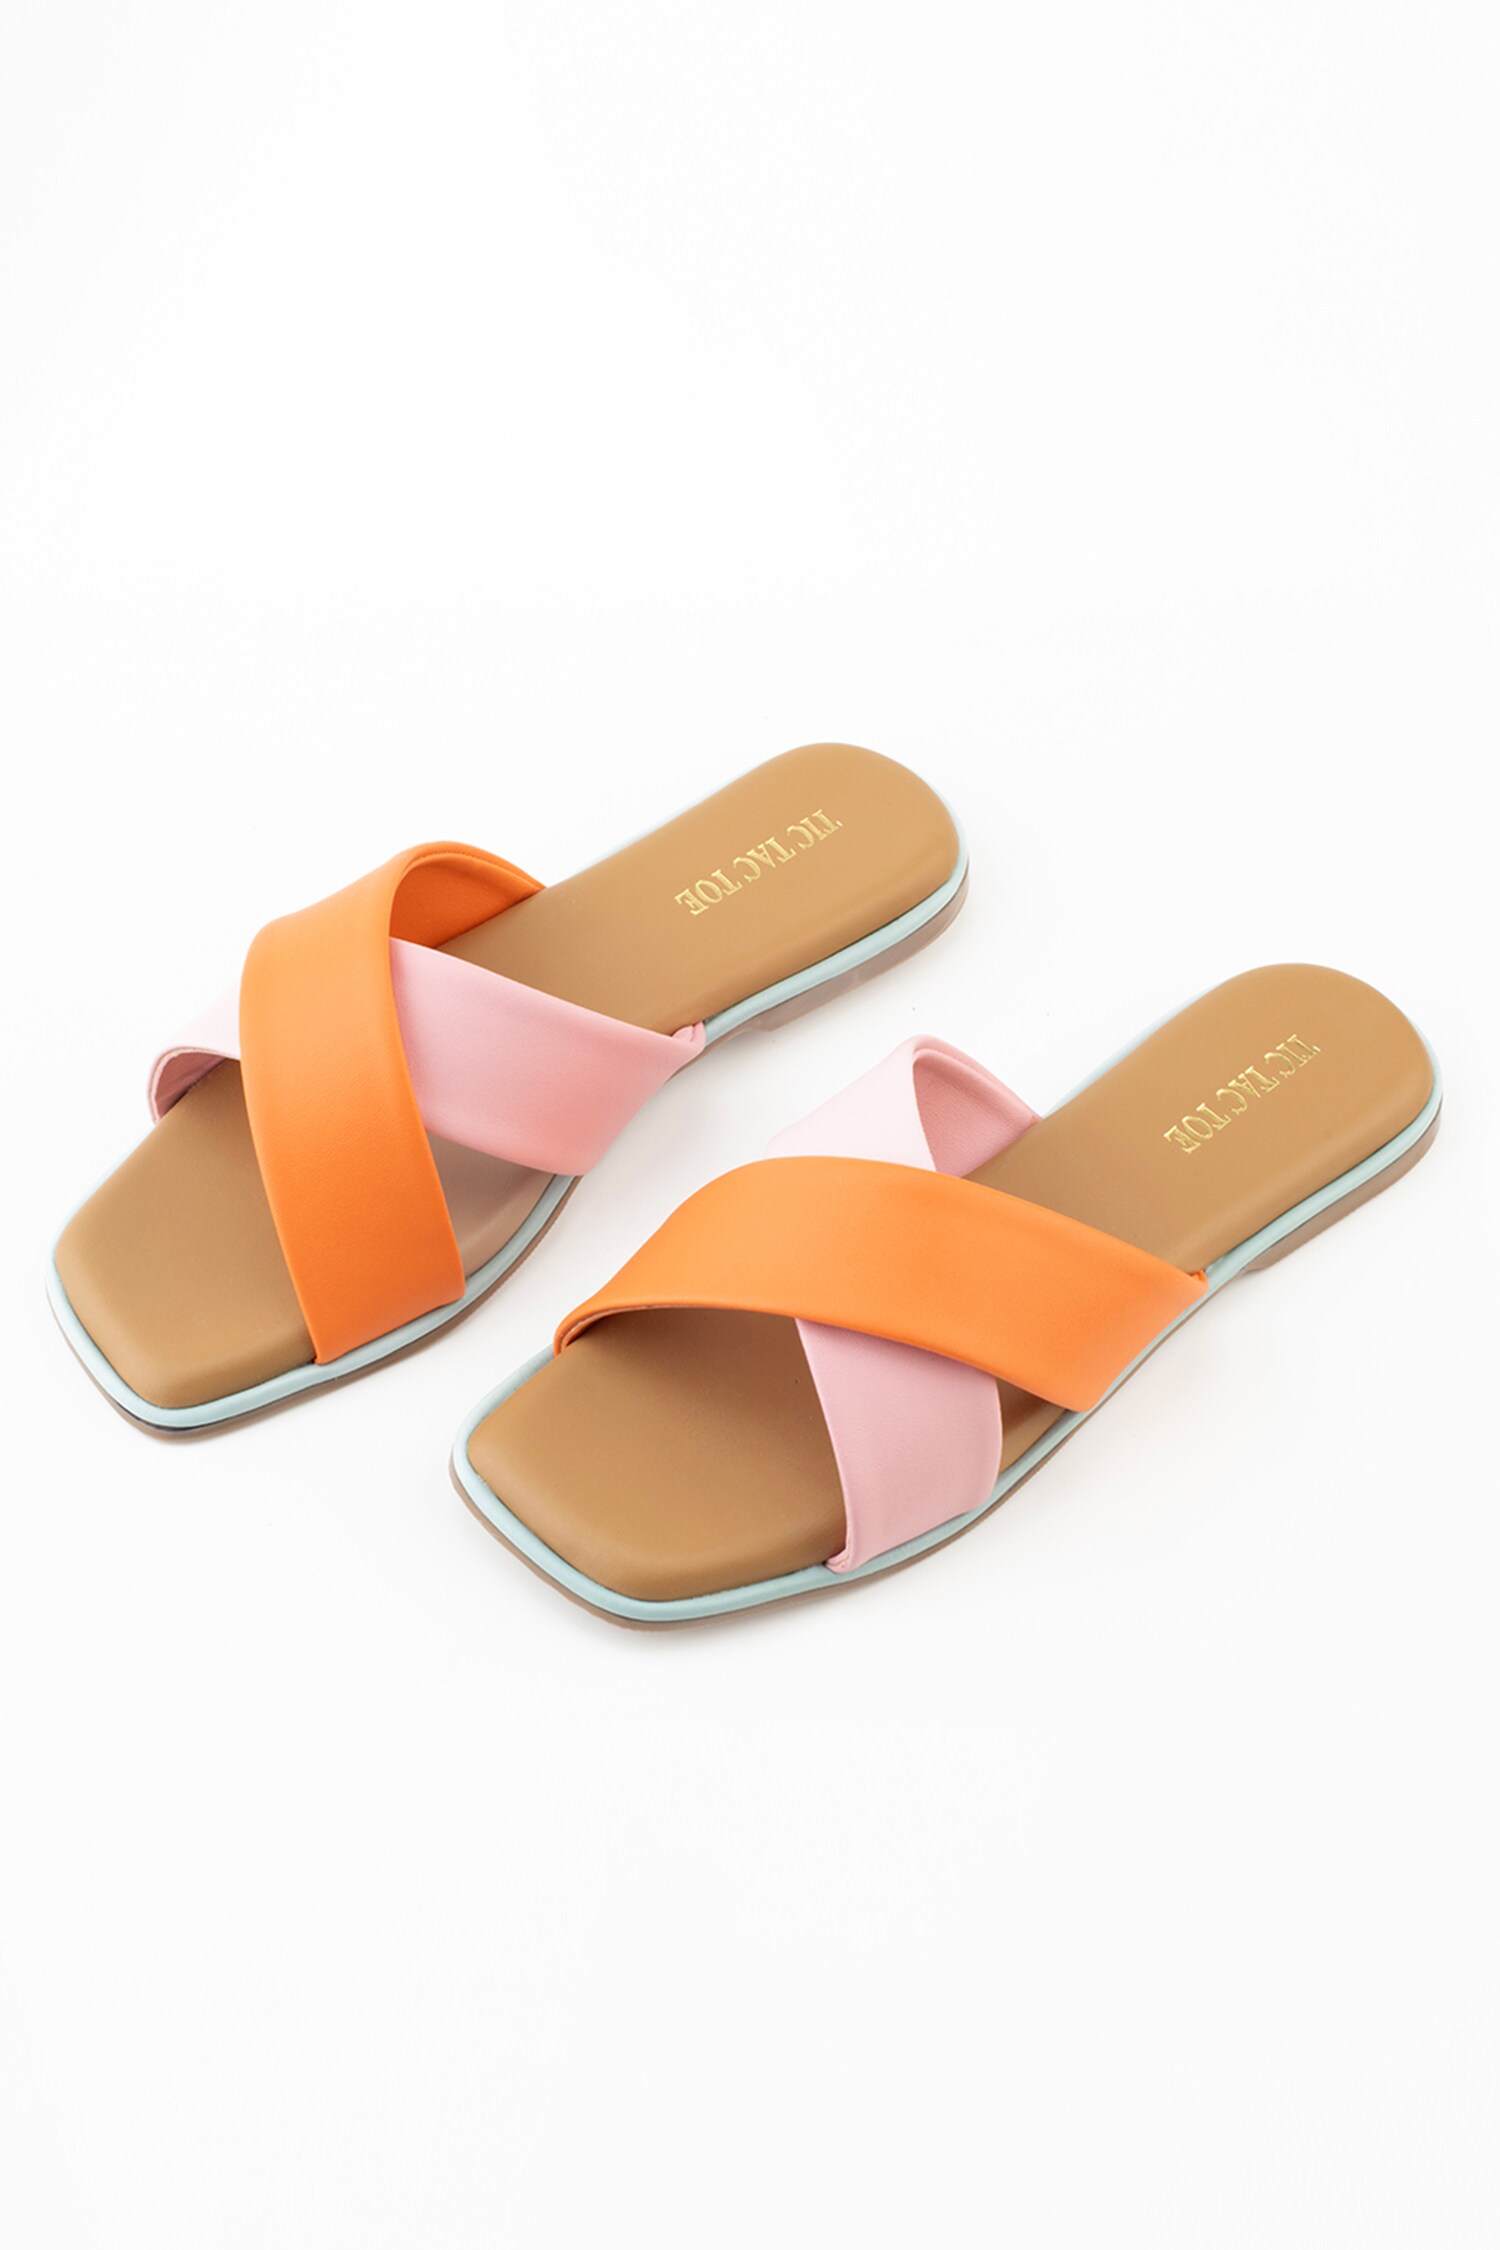 Buy Tic Tac Toe Footwear Peach Pu Leather Criss Cross Patta Flats ...